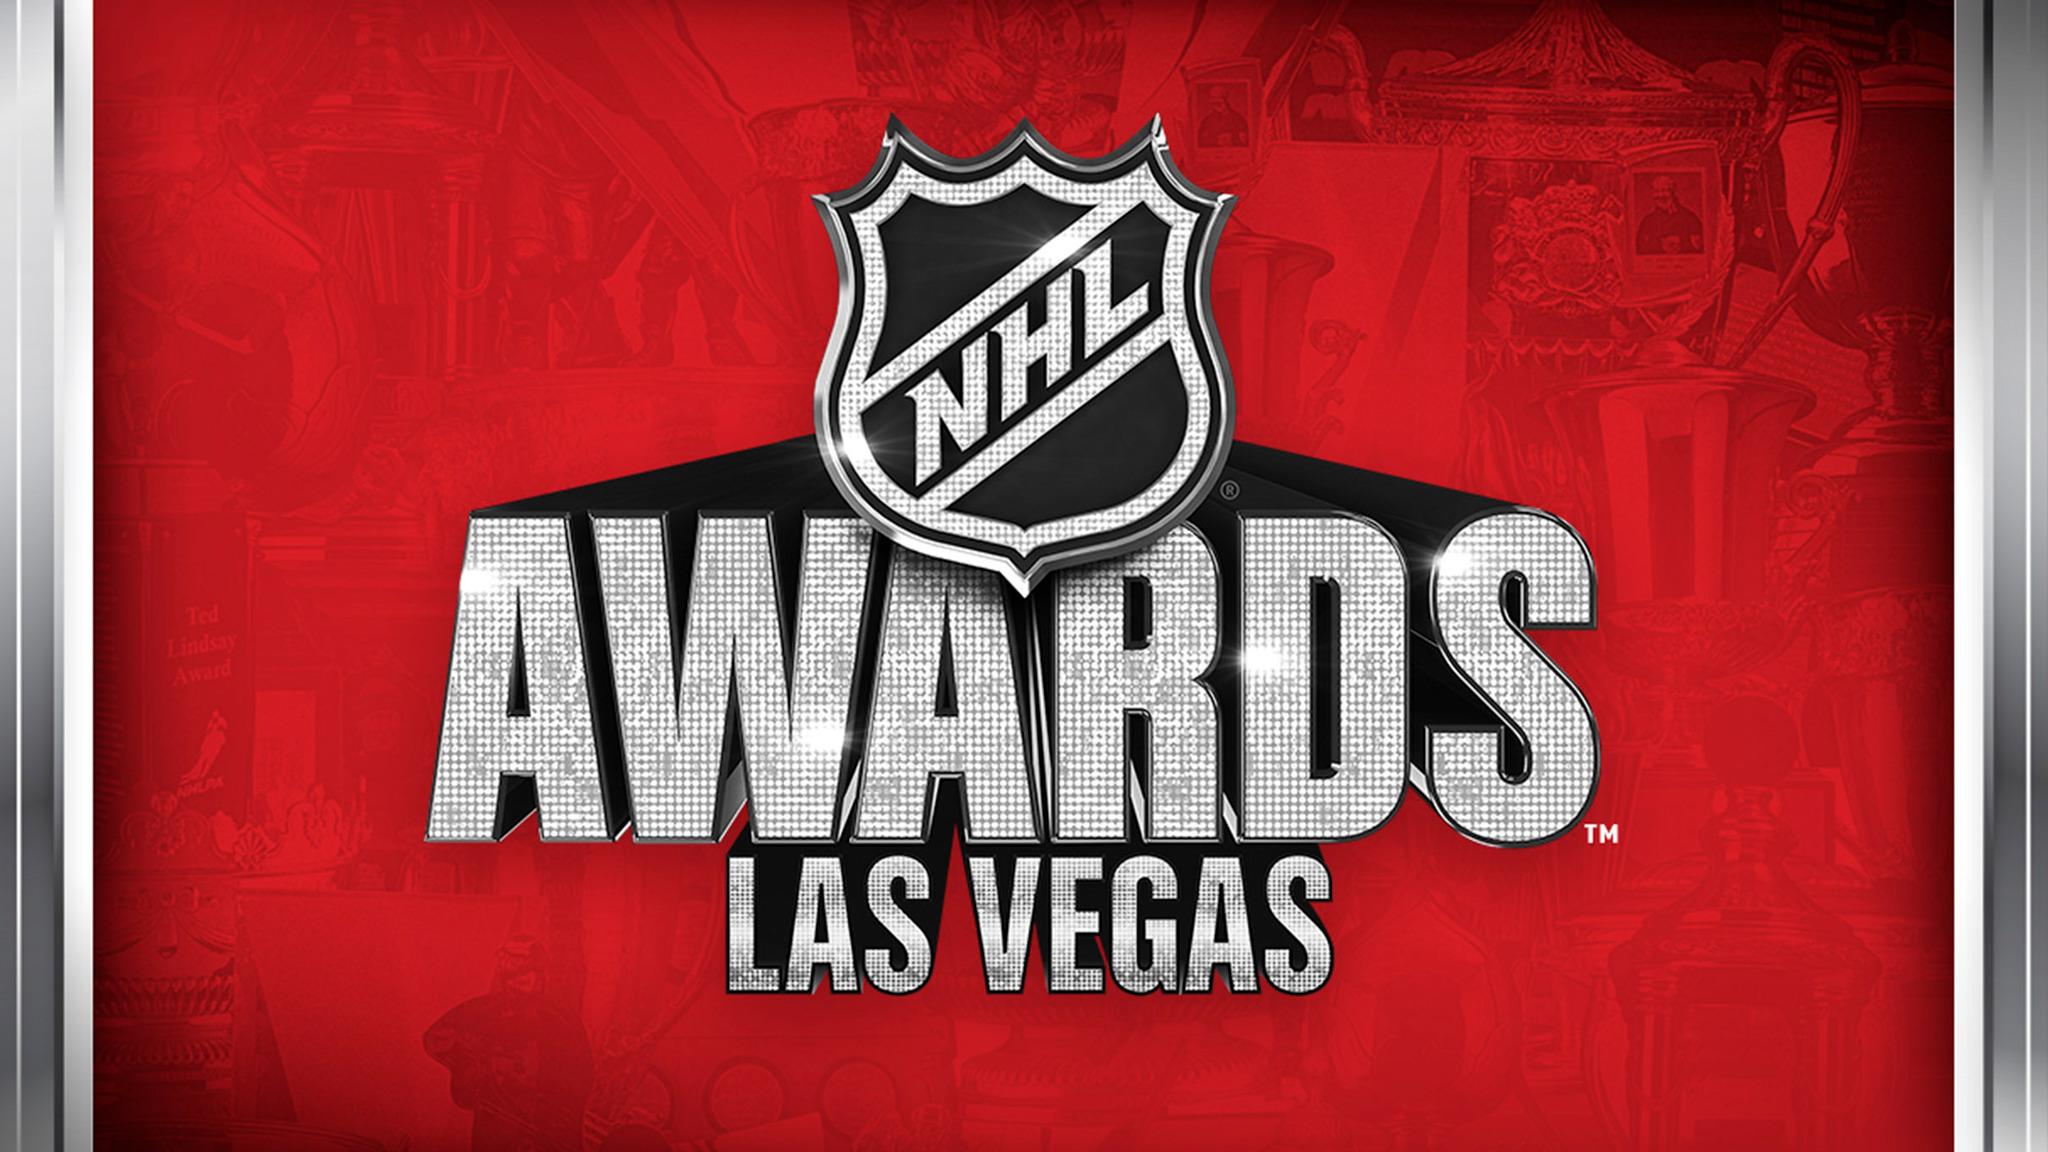 NHL Awards presale information on freepresalepasswords.com